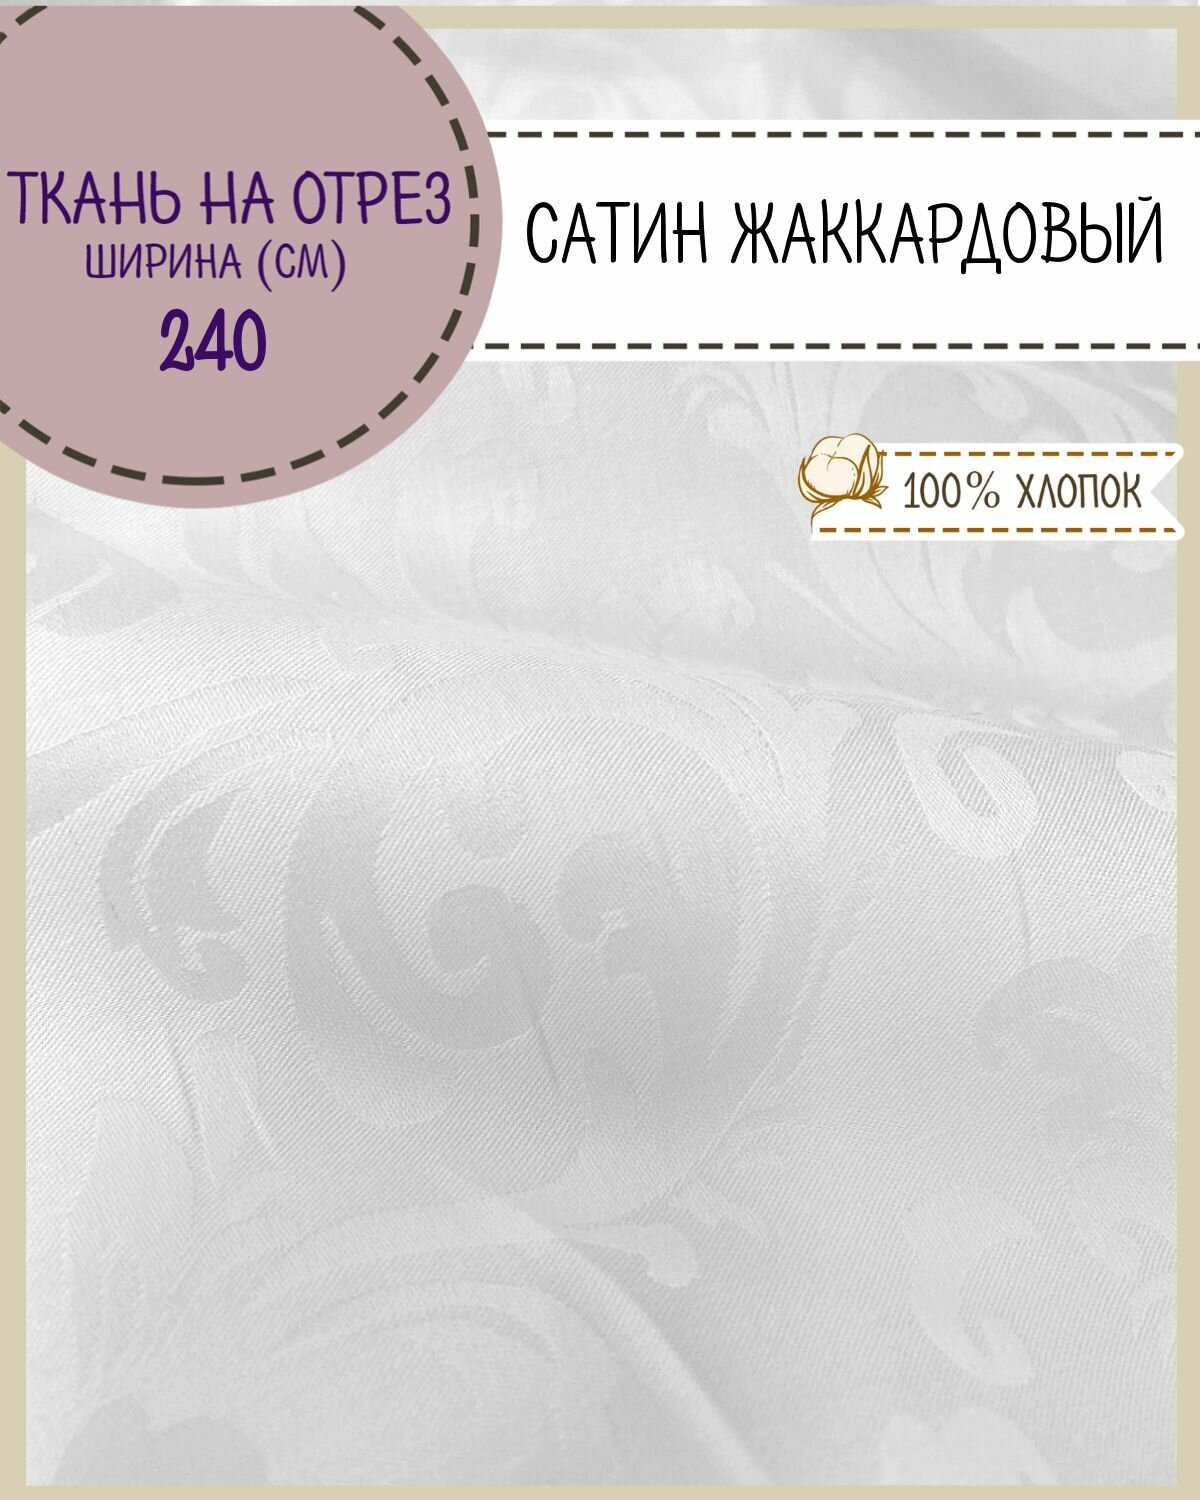 Ткань Сатин с жаккардом "Вензеля" цв. белый ш-240 пл.135 г/м2 на отрез цена за пог. метр